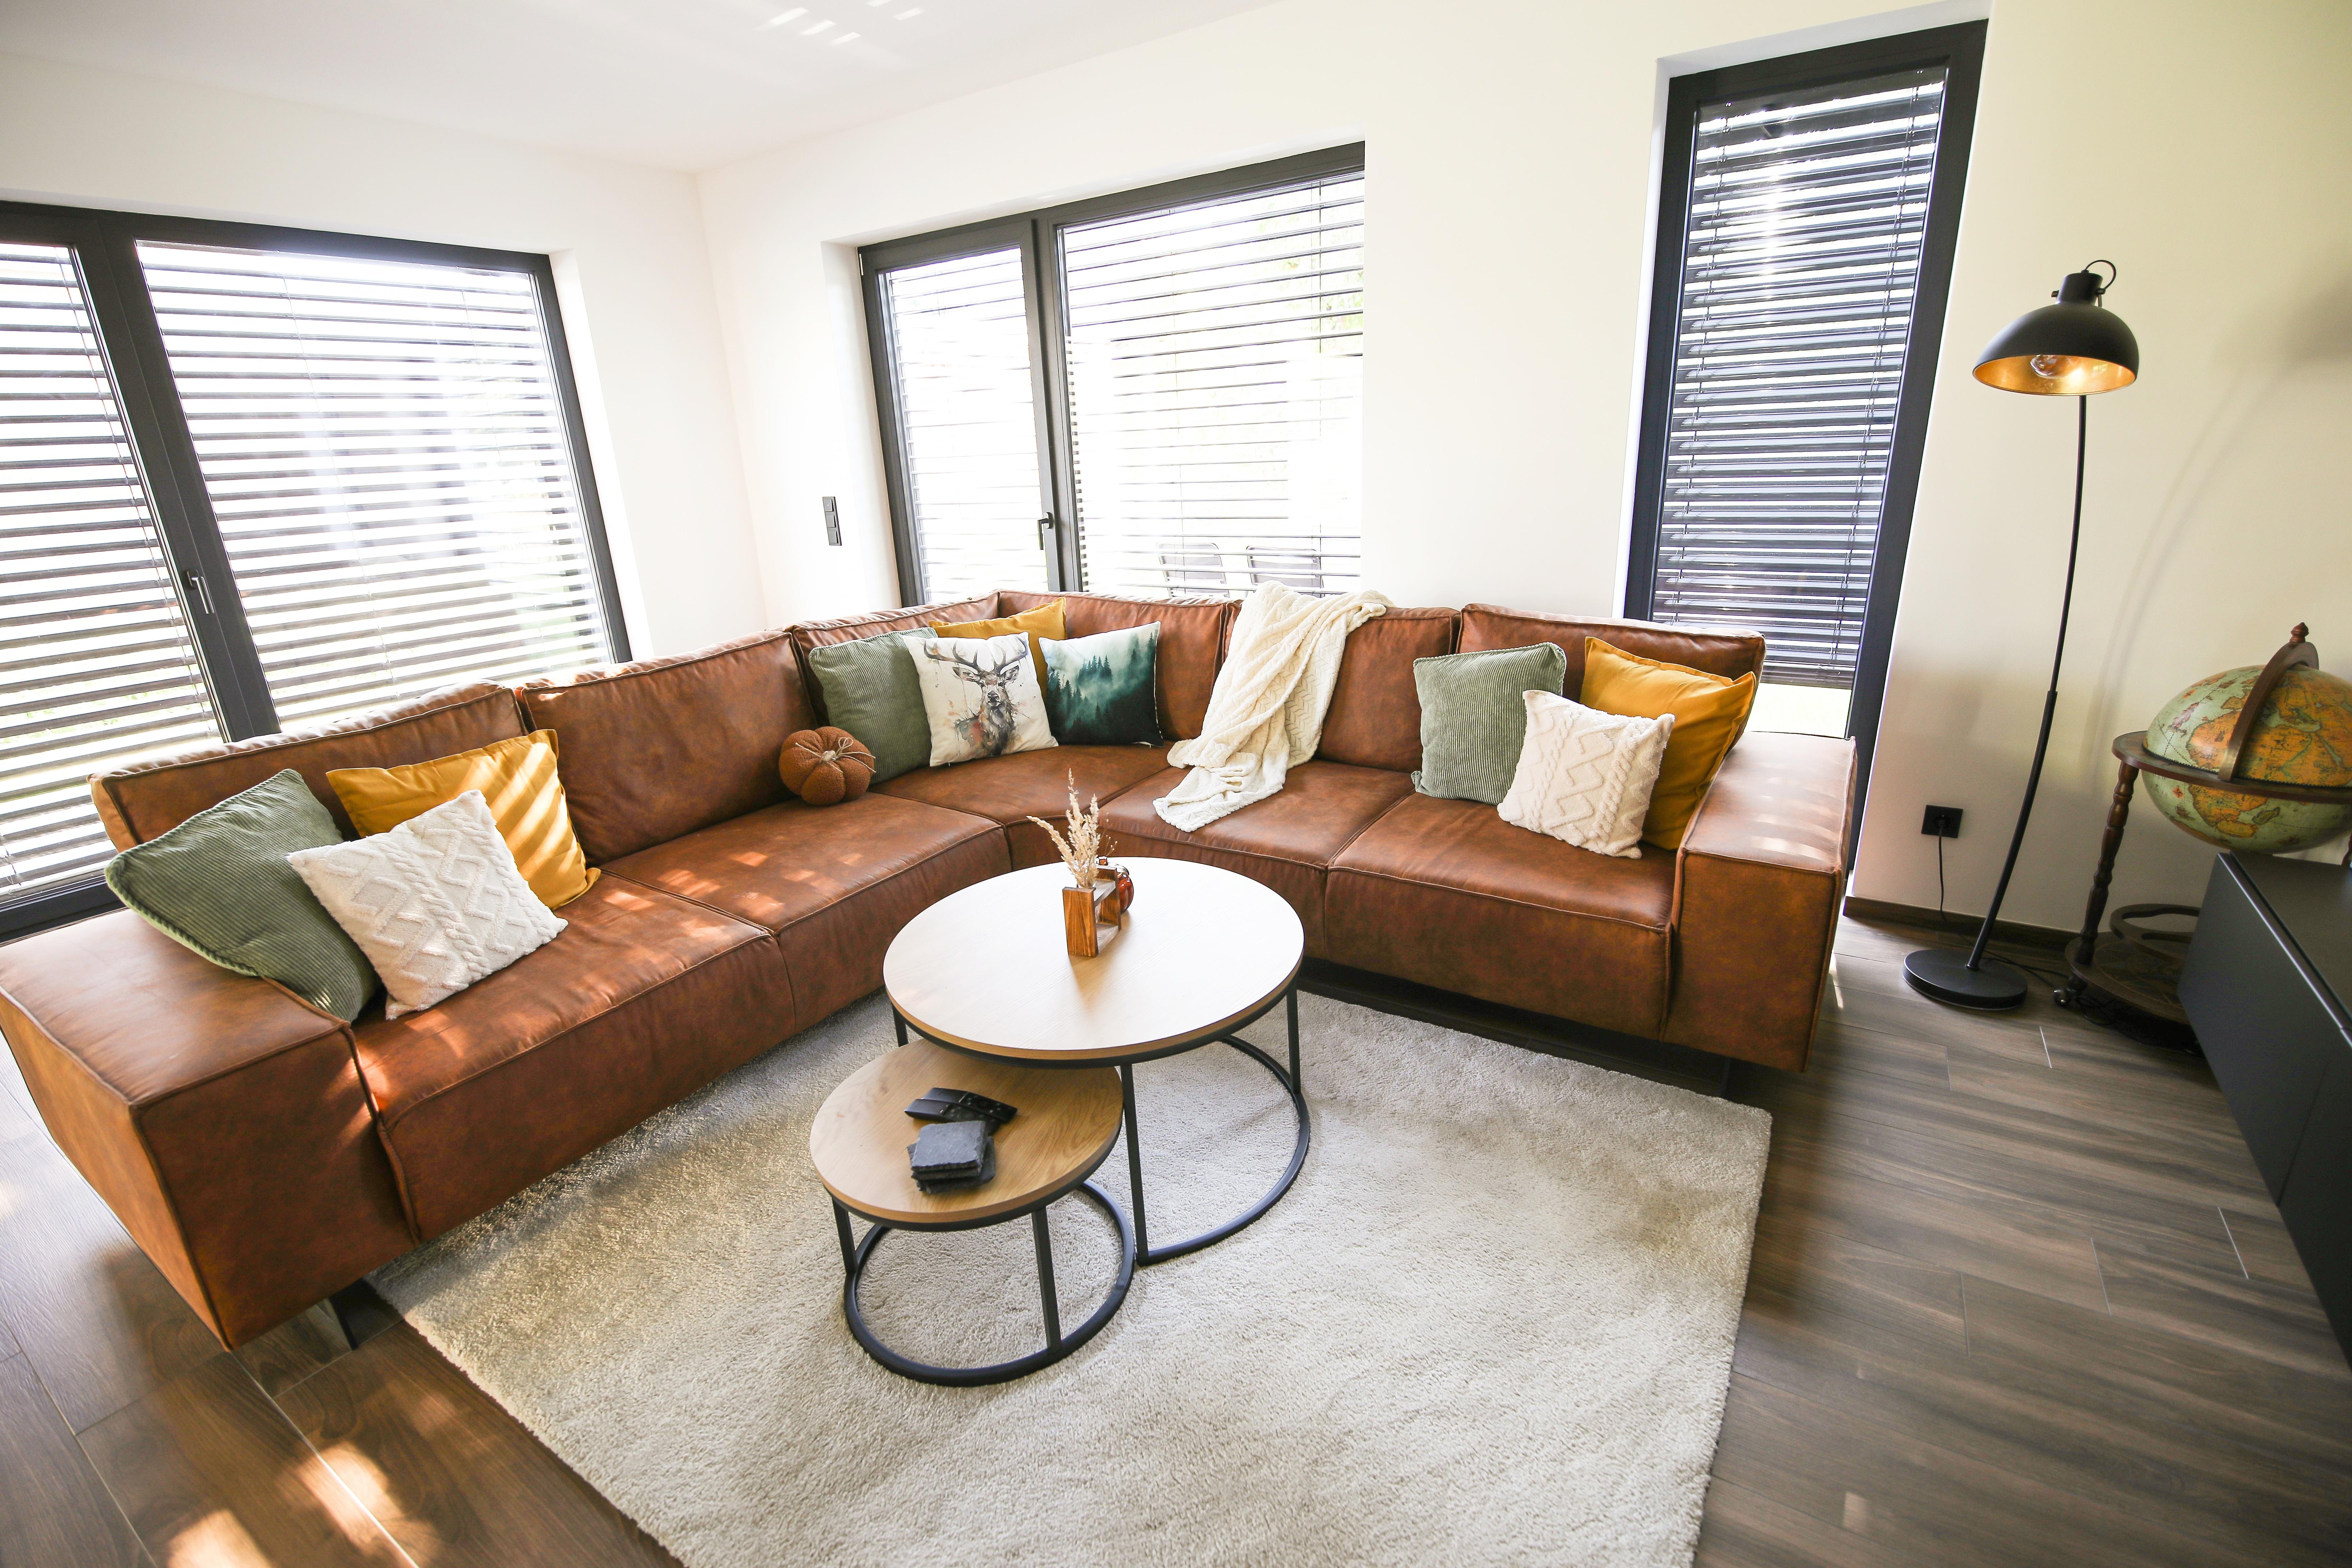 #wohnzimmer #wohnbereich #couch #sofa #kissen #deko #herbst